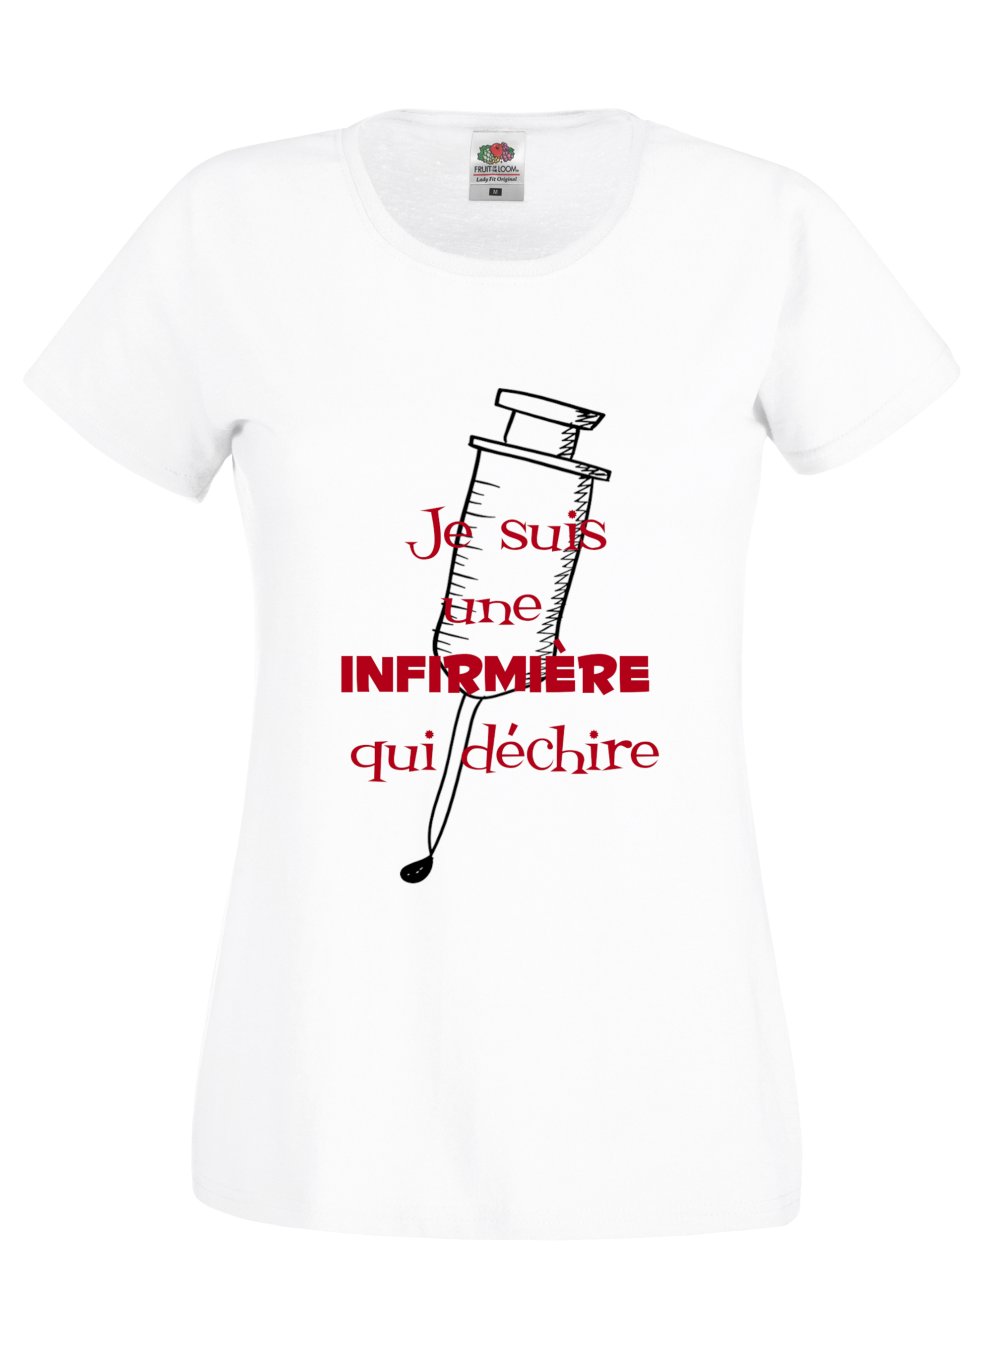 T-shirt Homme humour Je suis pas GROS c'est le tee shirt qui est mal taillé  humour -  France